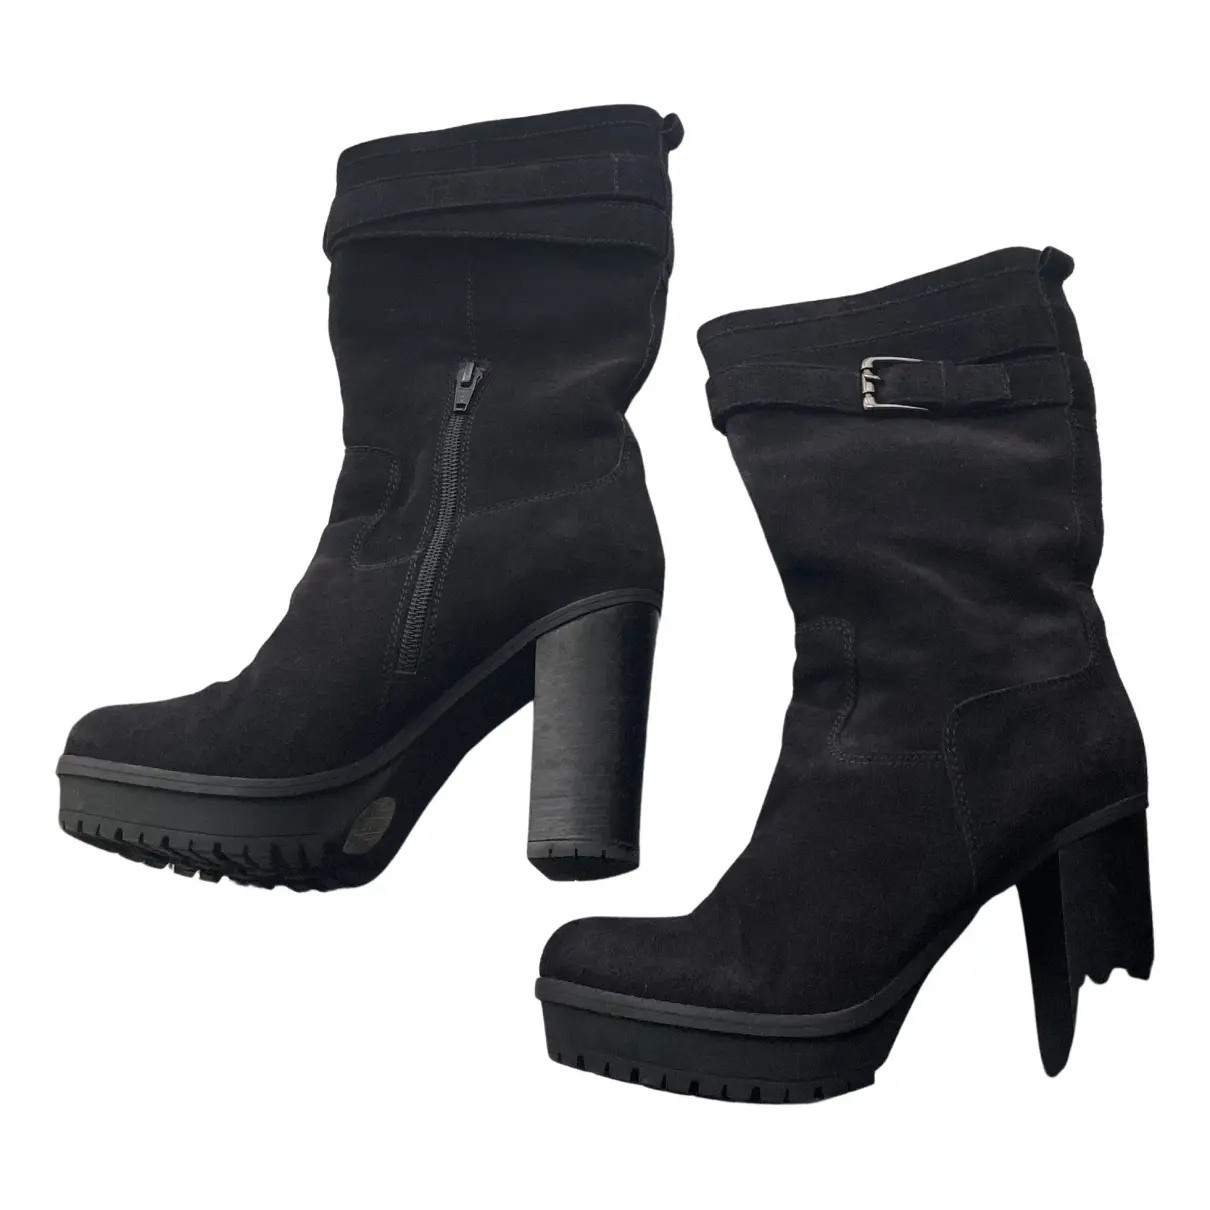 Buy Unisa Boots online